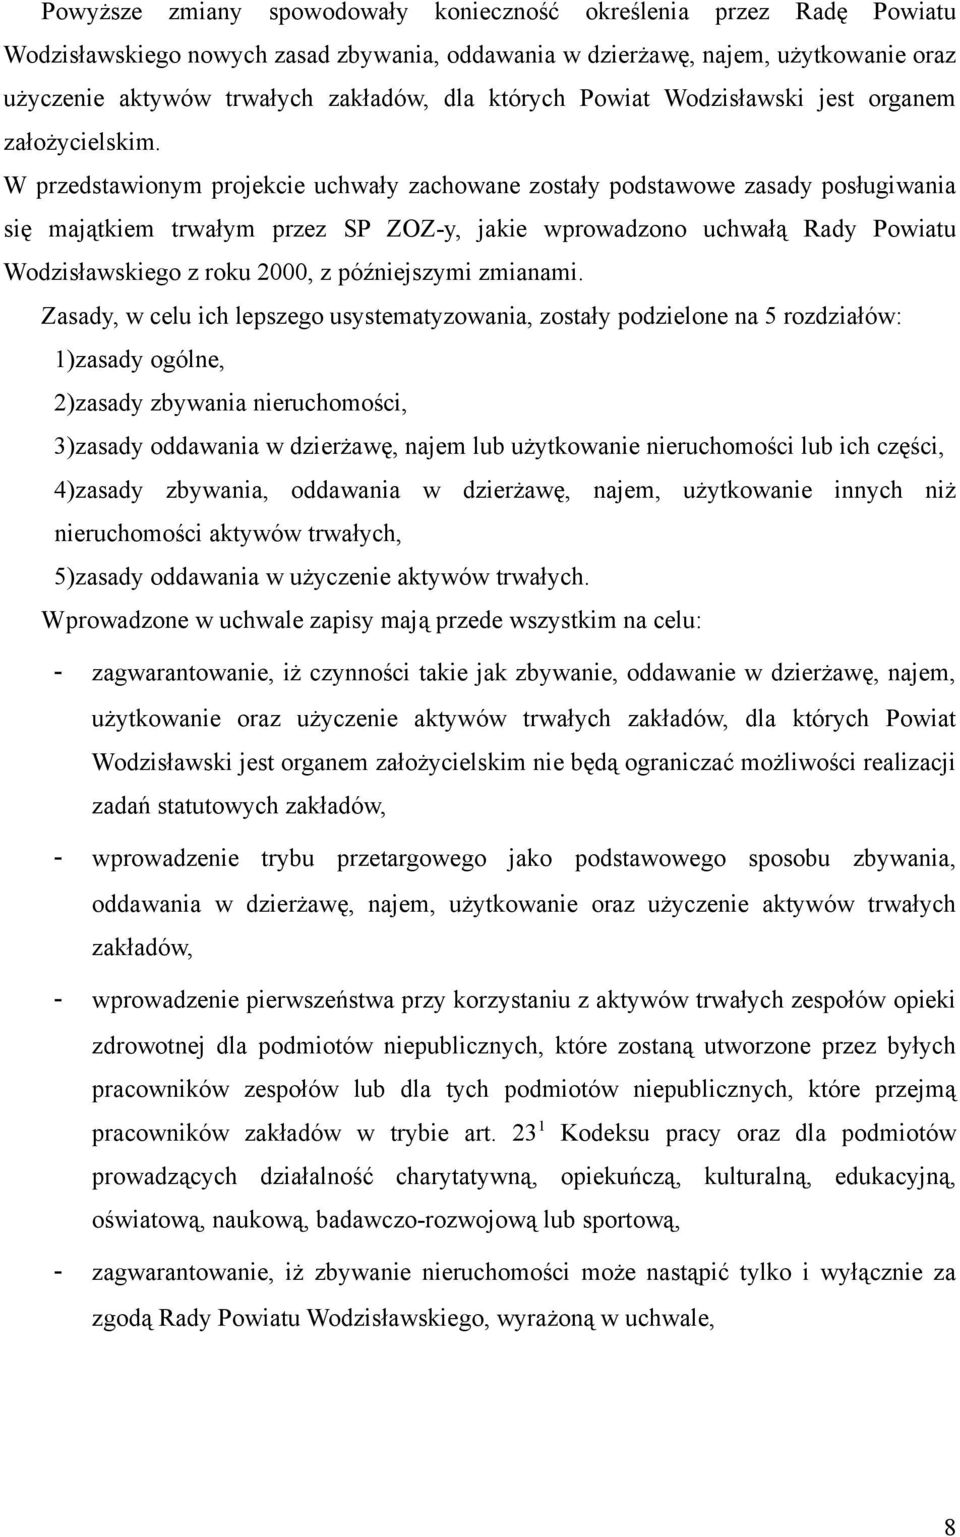 W przedstawionym projekcie uchwały zachowane zostały podstawowe zasady posługiwania się majątkiem trwałym przez SP ZOZ-y, jakie wprowadzono uchwałą Rady Powiatu Wodzisławskiego z roku 2000, z